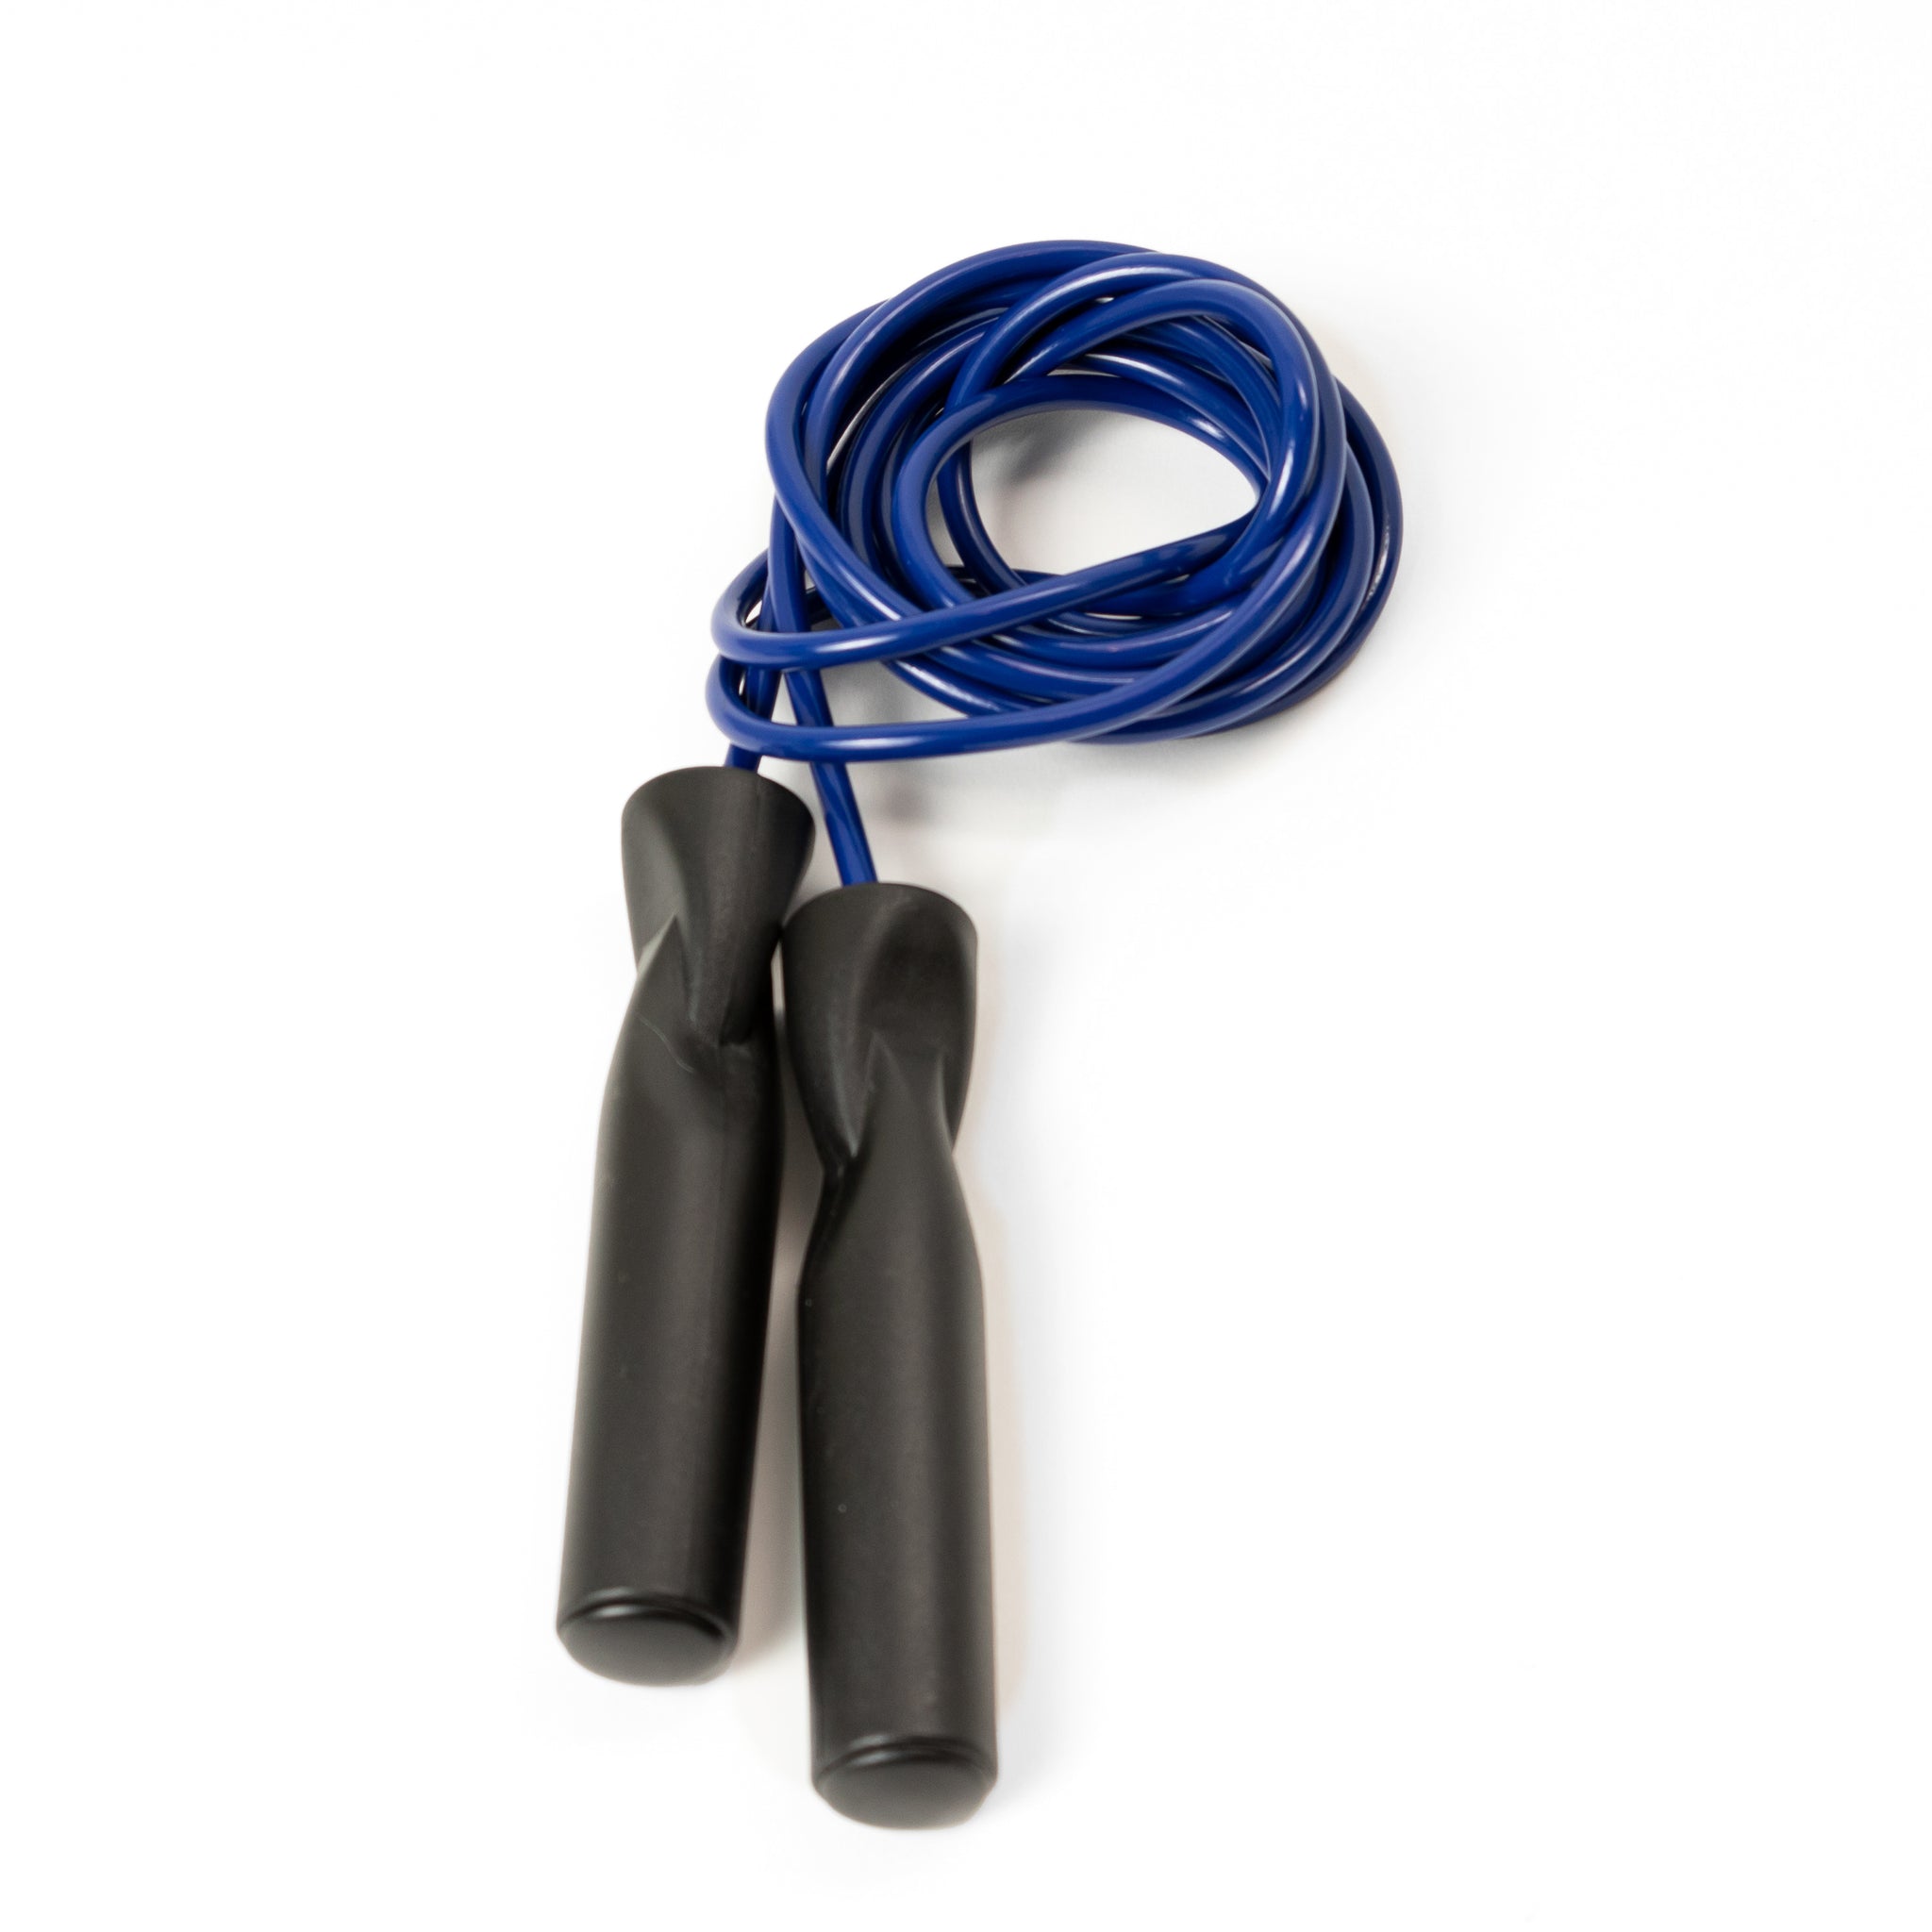 Blue vinyl jump rope with black handles.